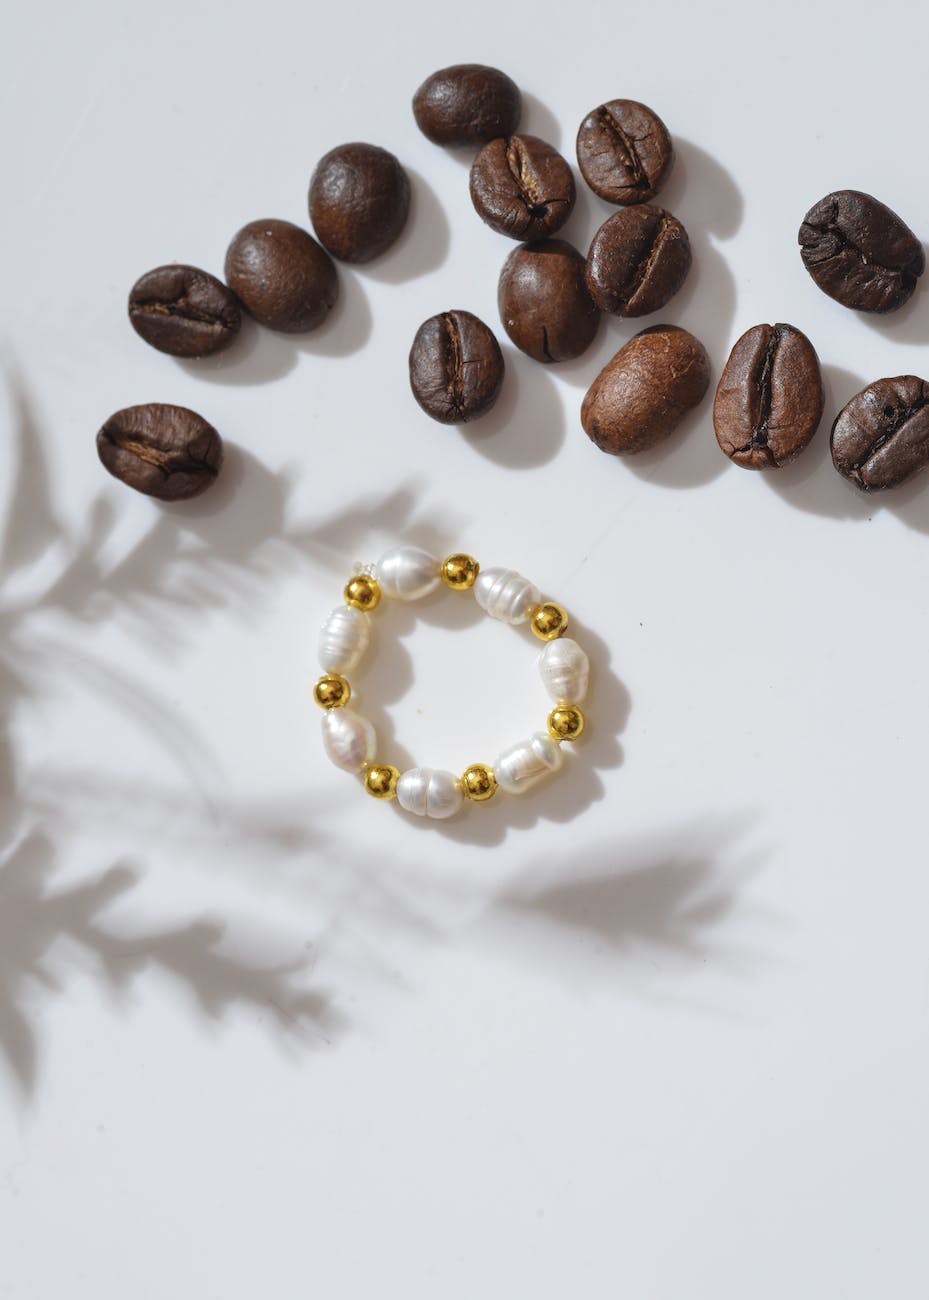 a pearl bracelet beside coffee beans